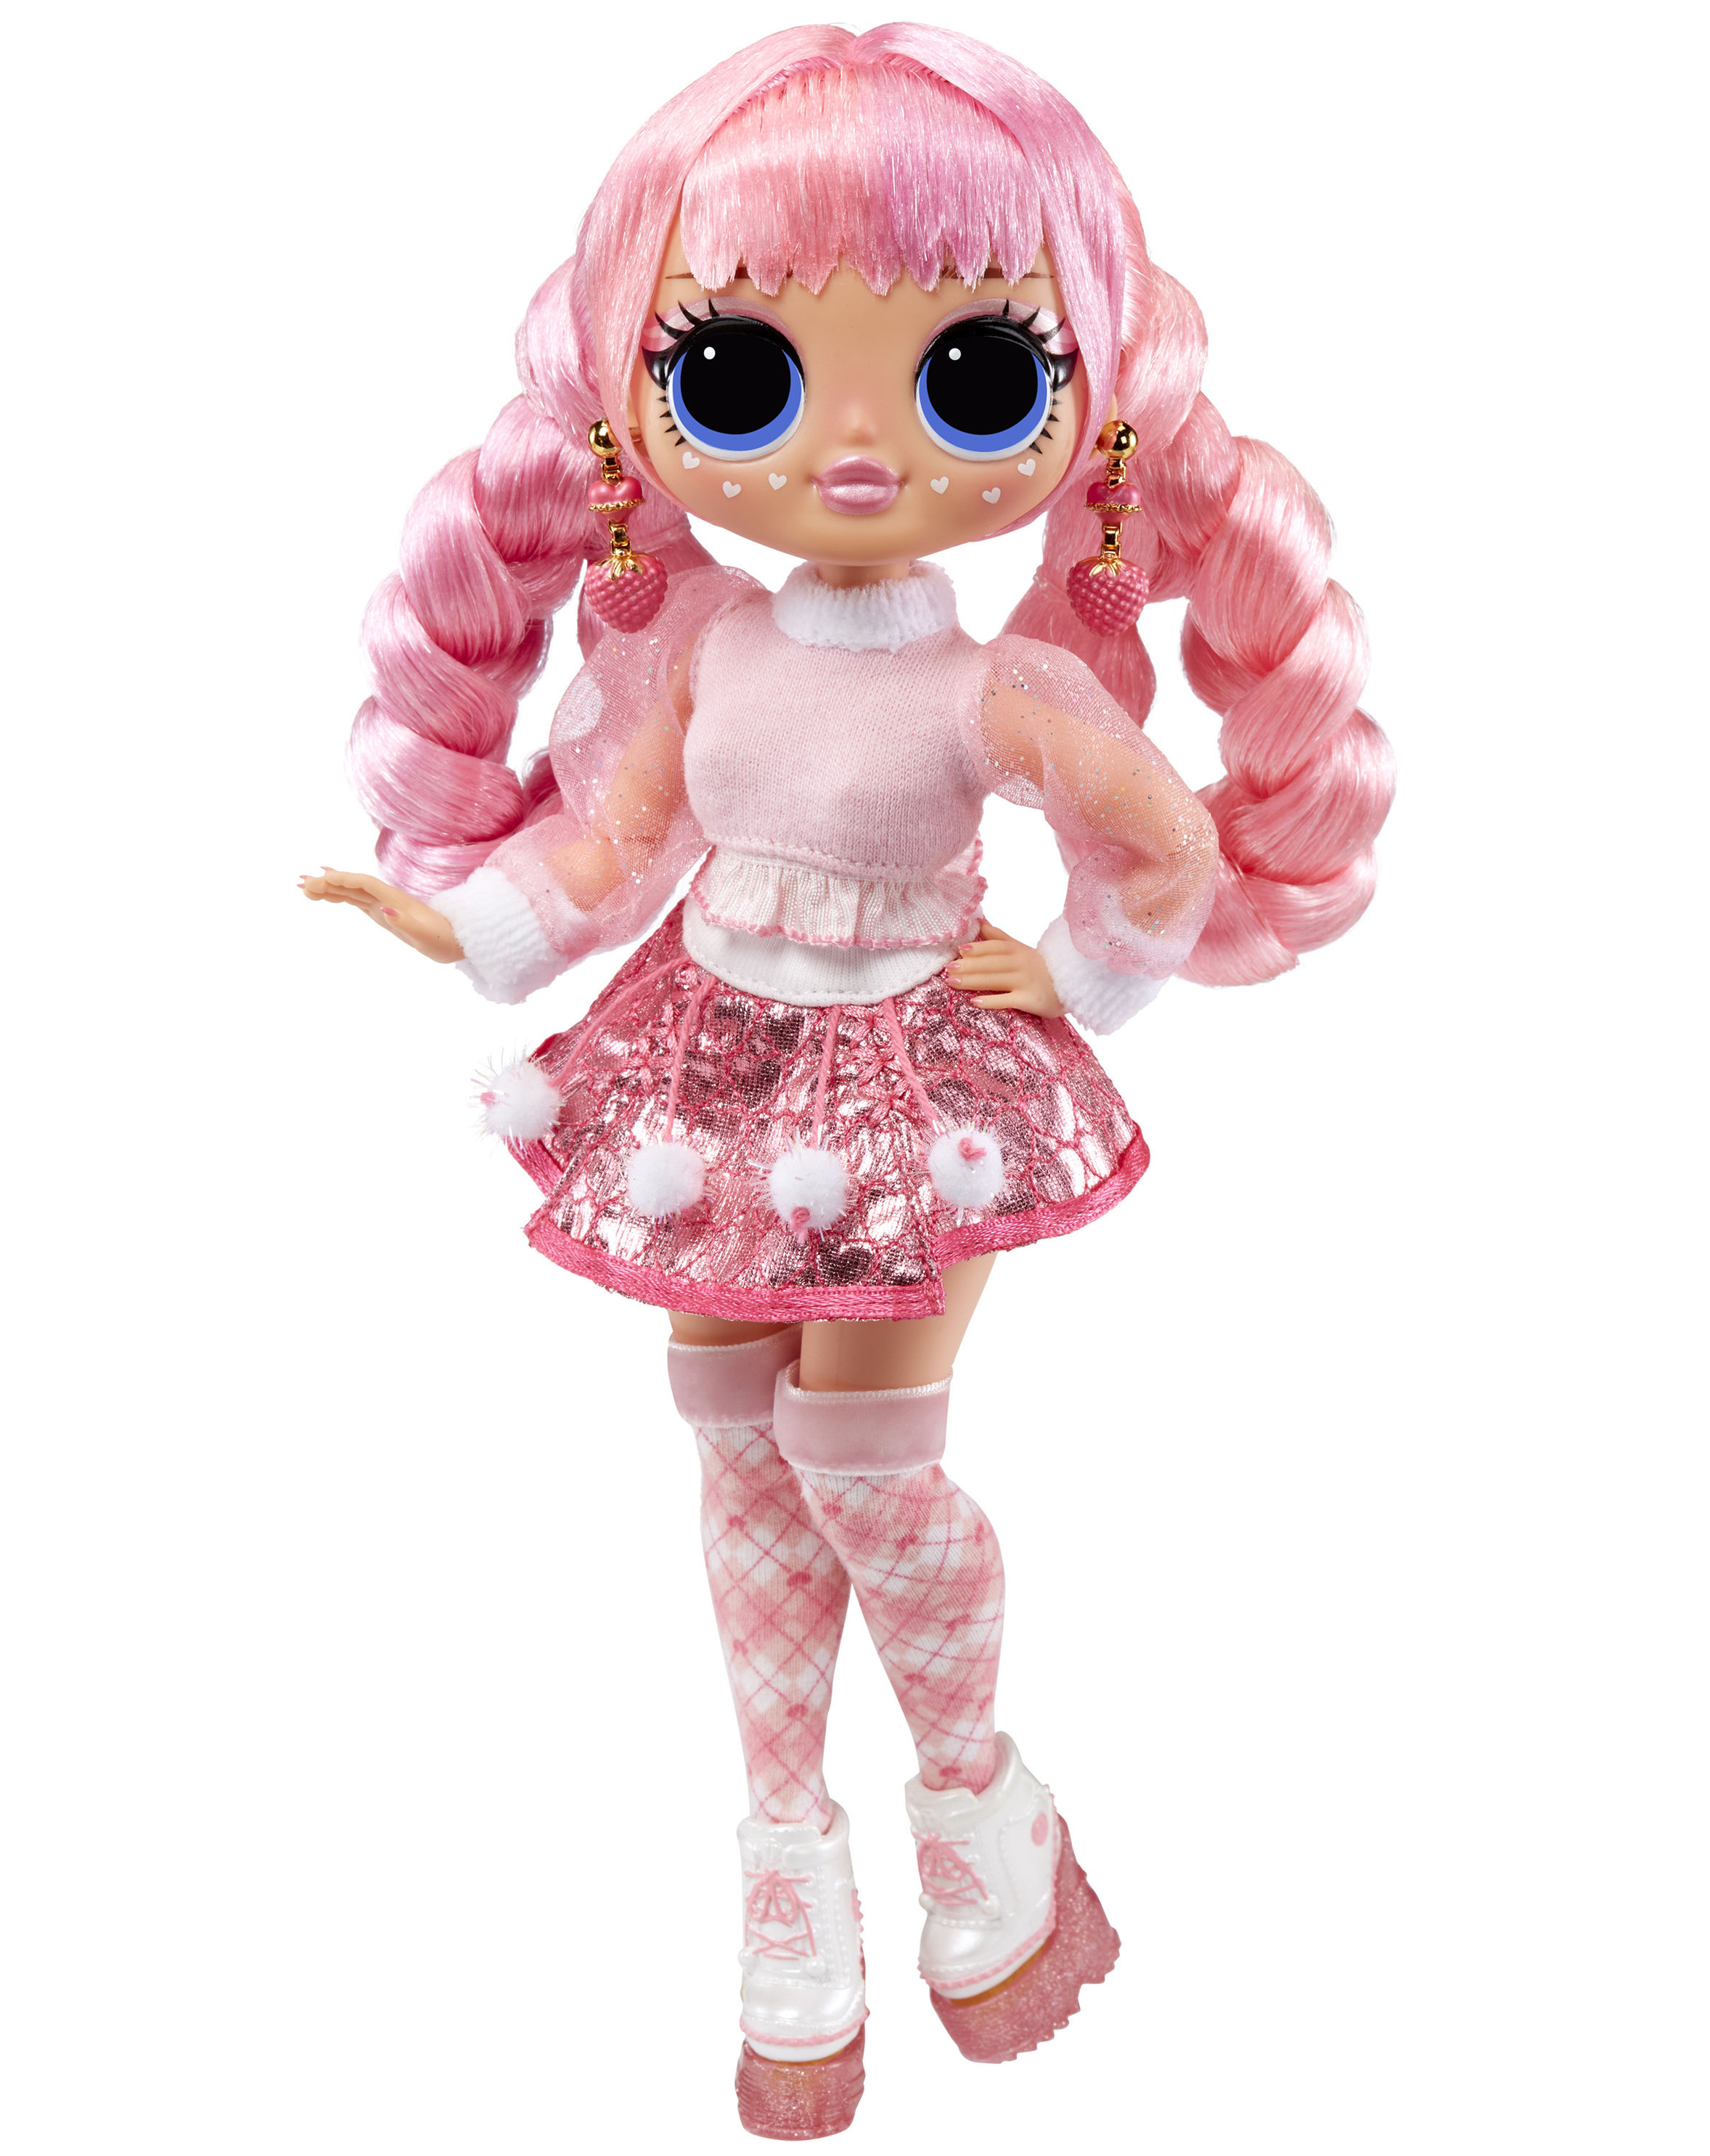 Puppe OMG LA ROSE 27 cm in rosa jetzt bei Weltbild.de bestellen